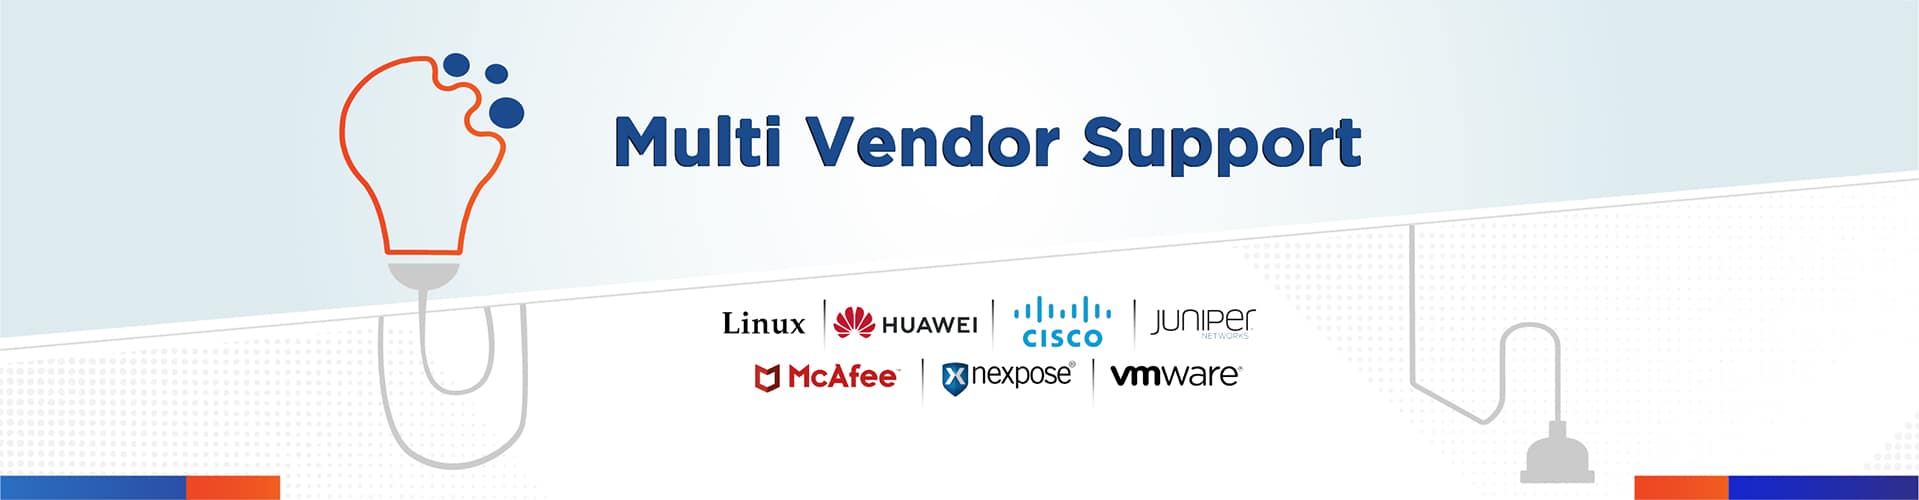 Multi, Multi Vendor Support